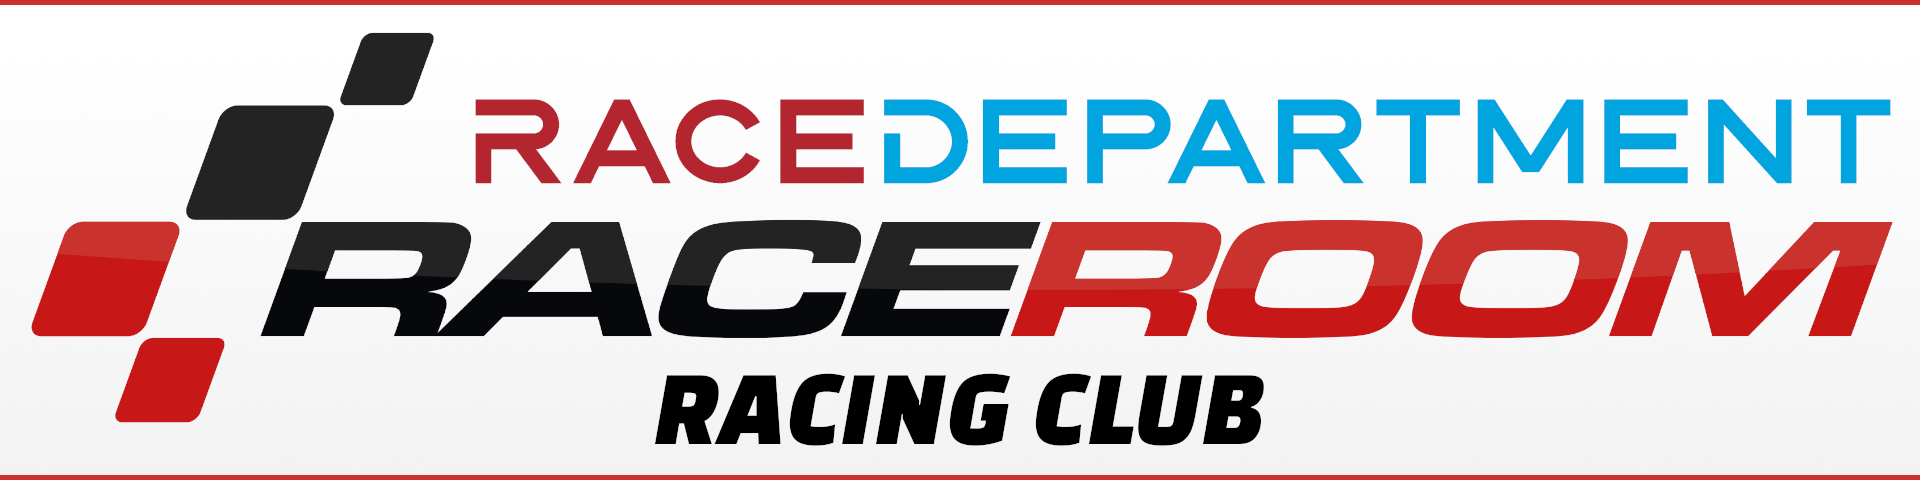 R3E Racing Club.png